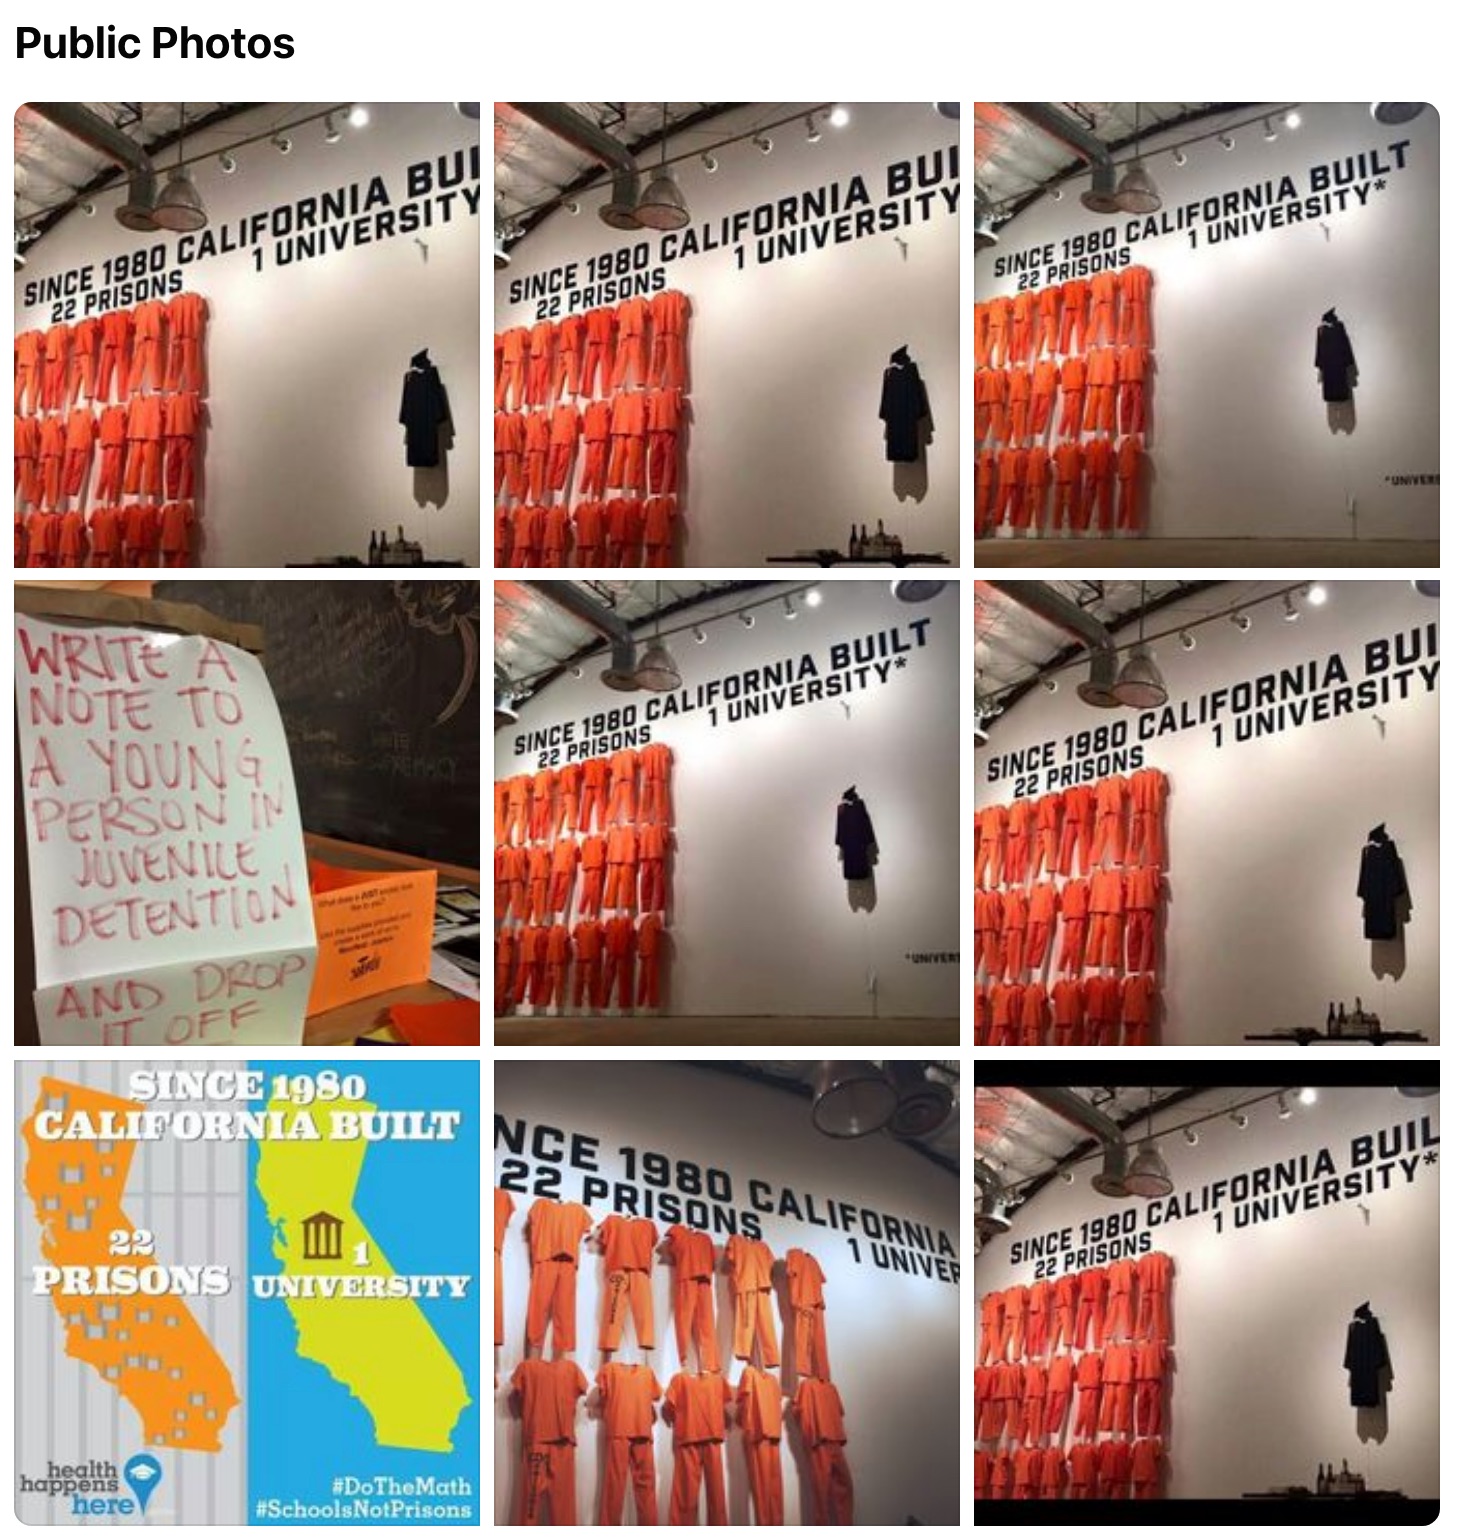 ‘Since 1980 California Built 22 Prisons, 1 University’